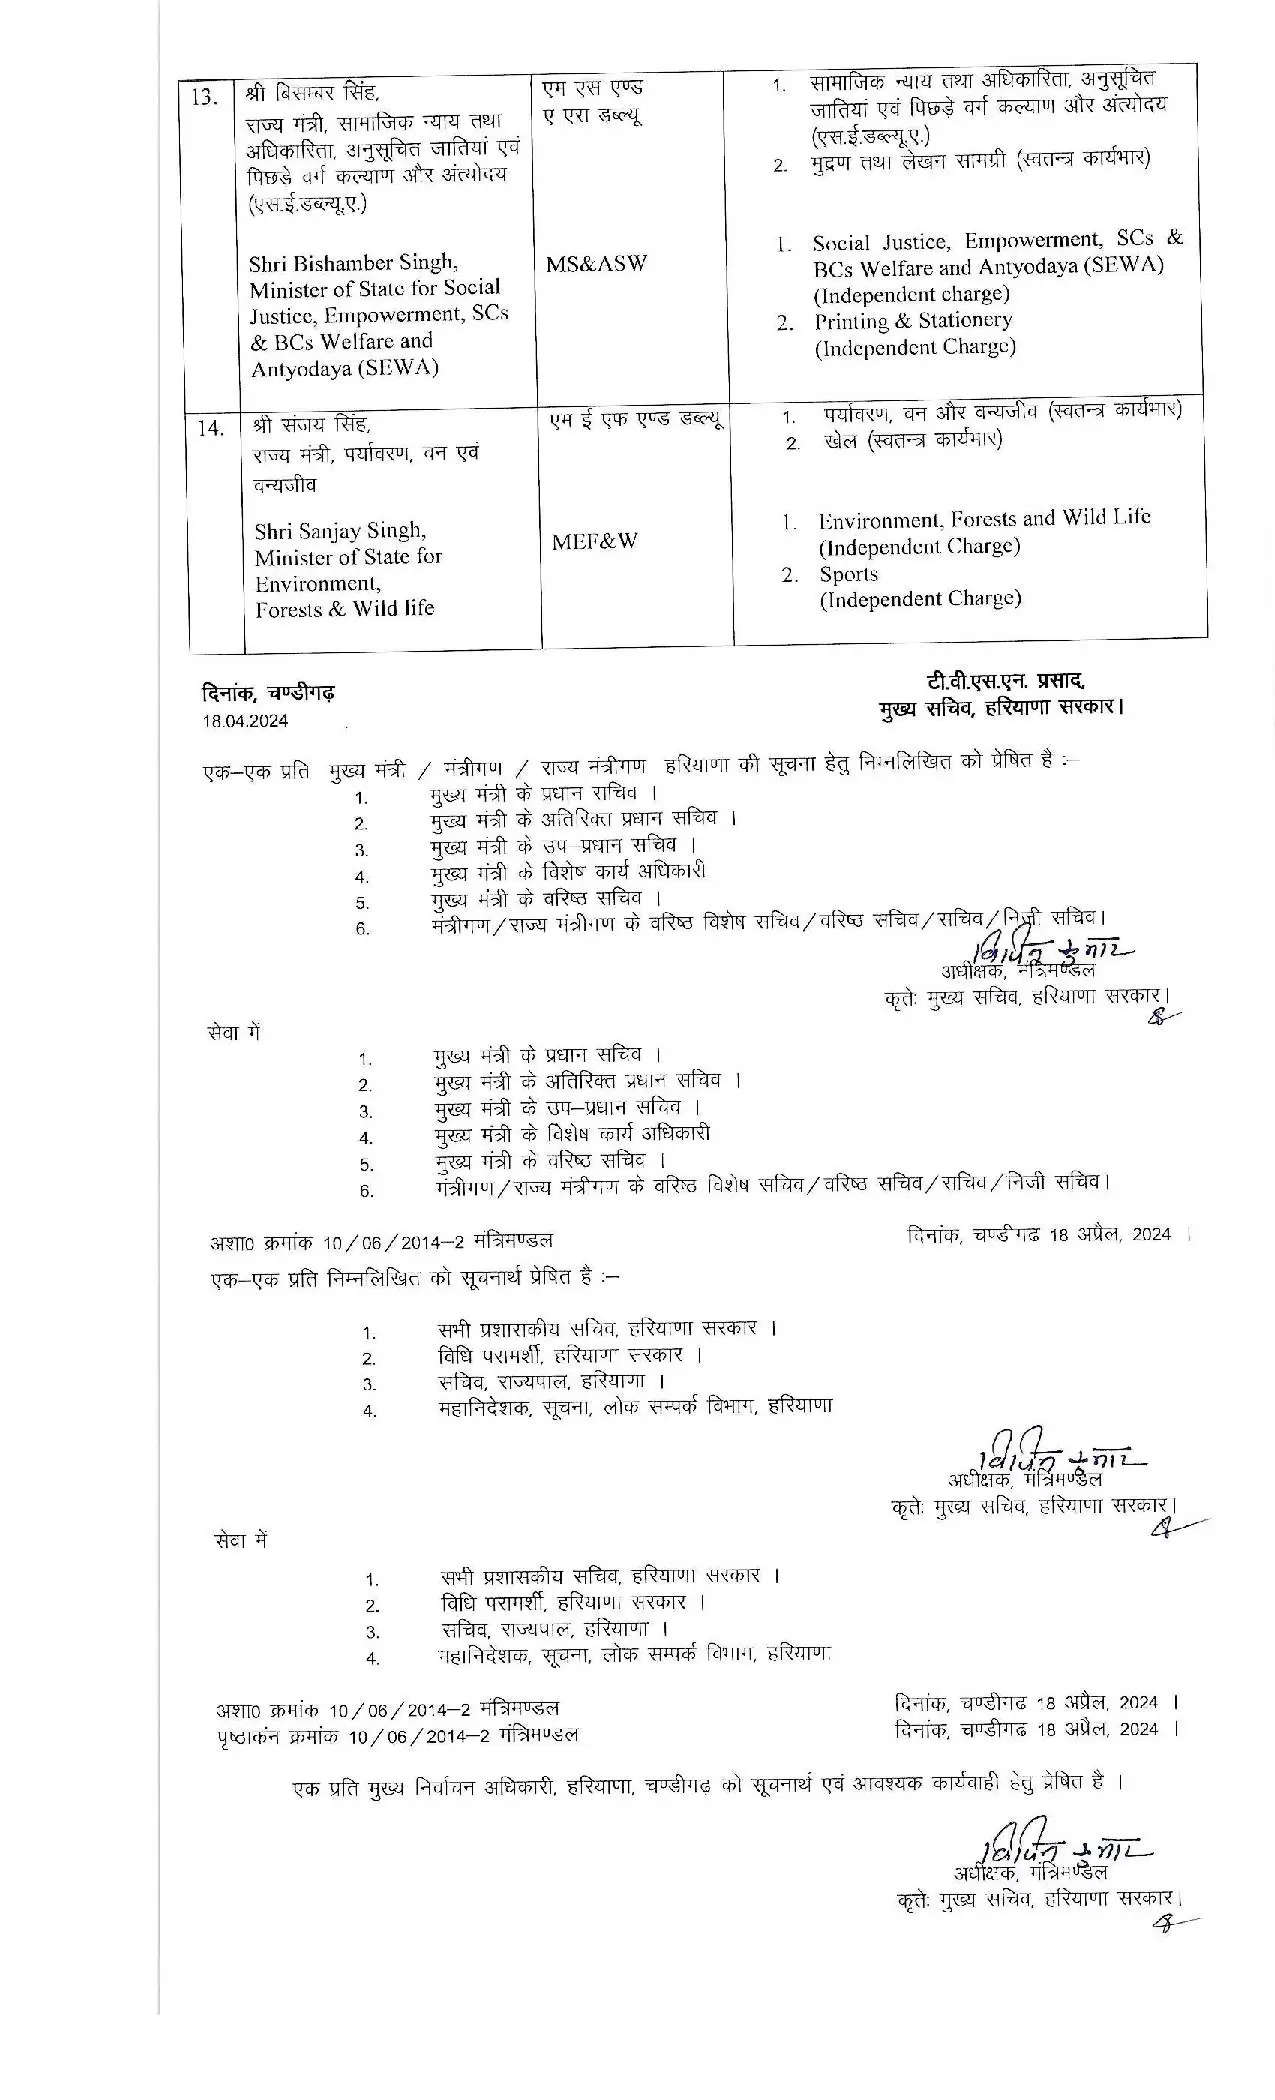 Haryana News: हरियाणा में मंत्रियों के विभागों की लिस्ट हुई जारी, फटाफट देखें पूरी जानकारी 333